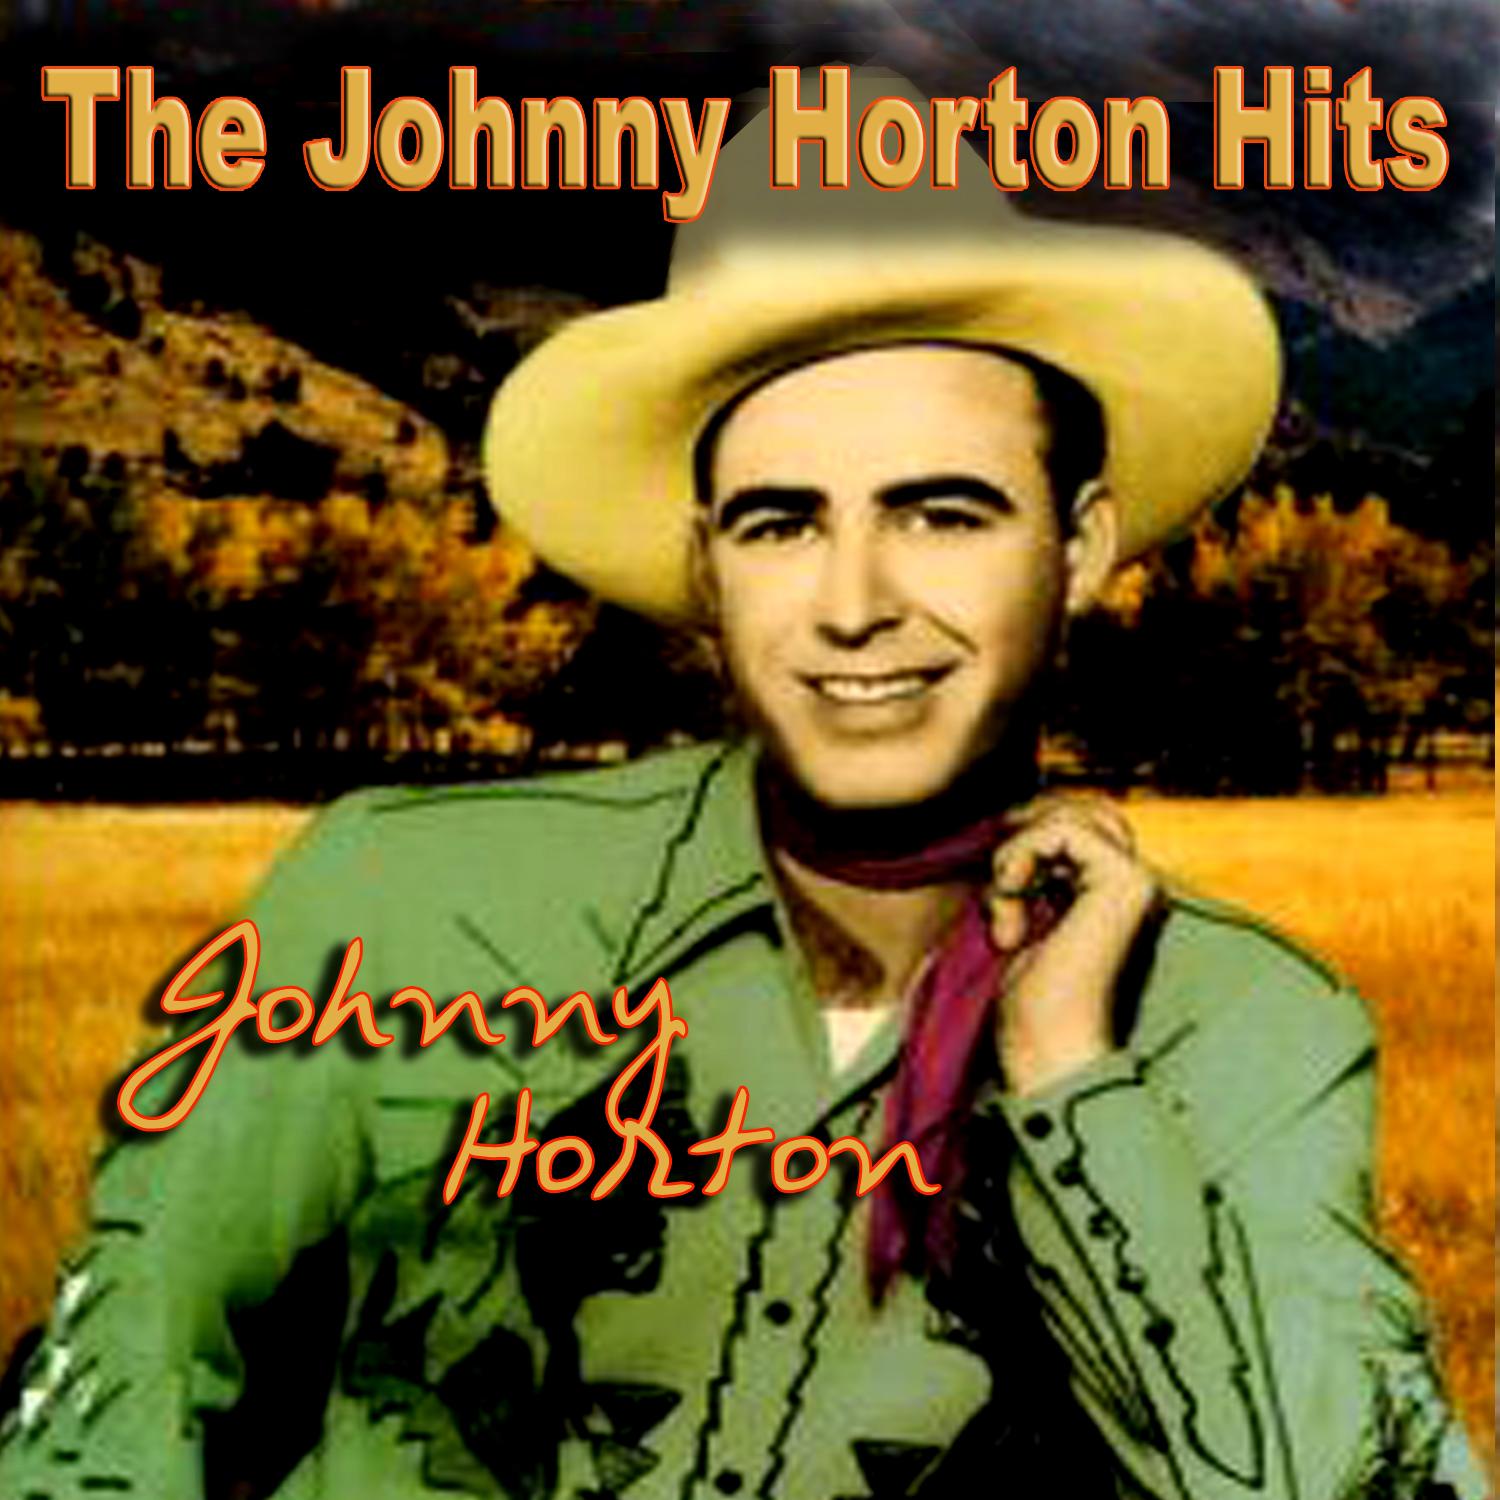 The Johnny Horton Hits